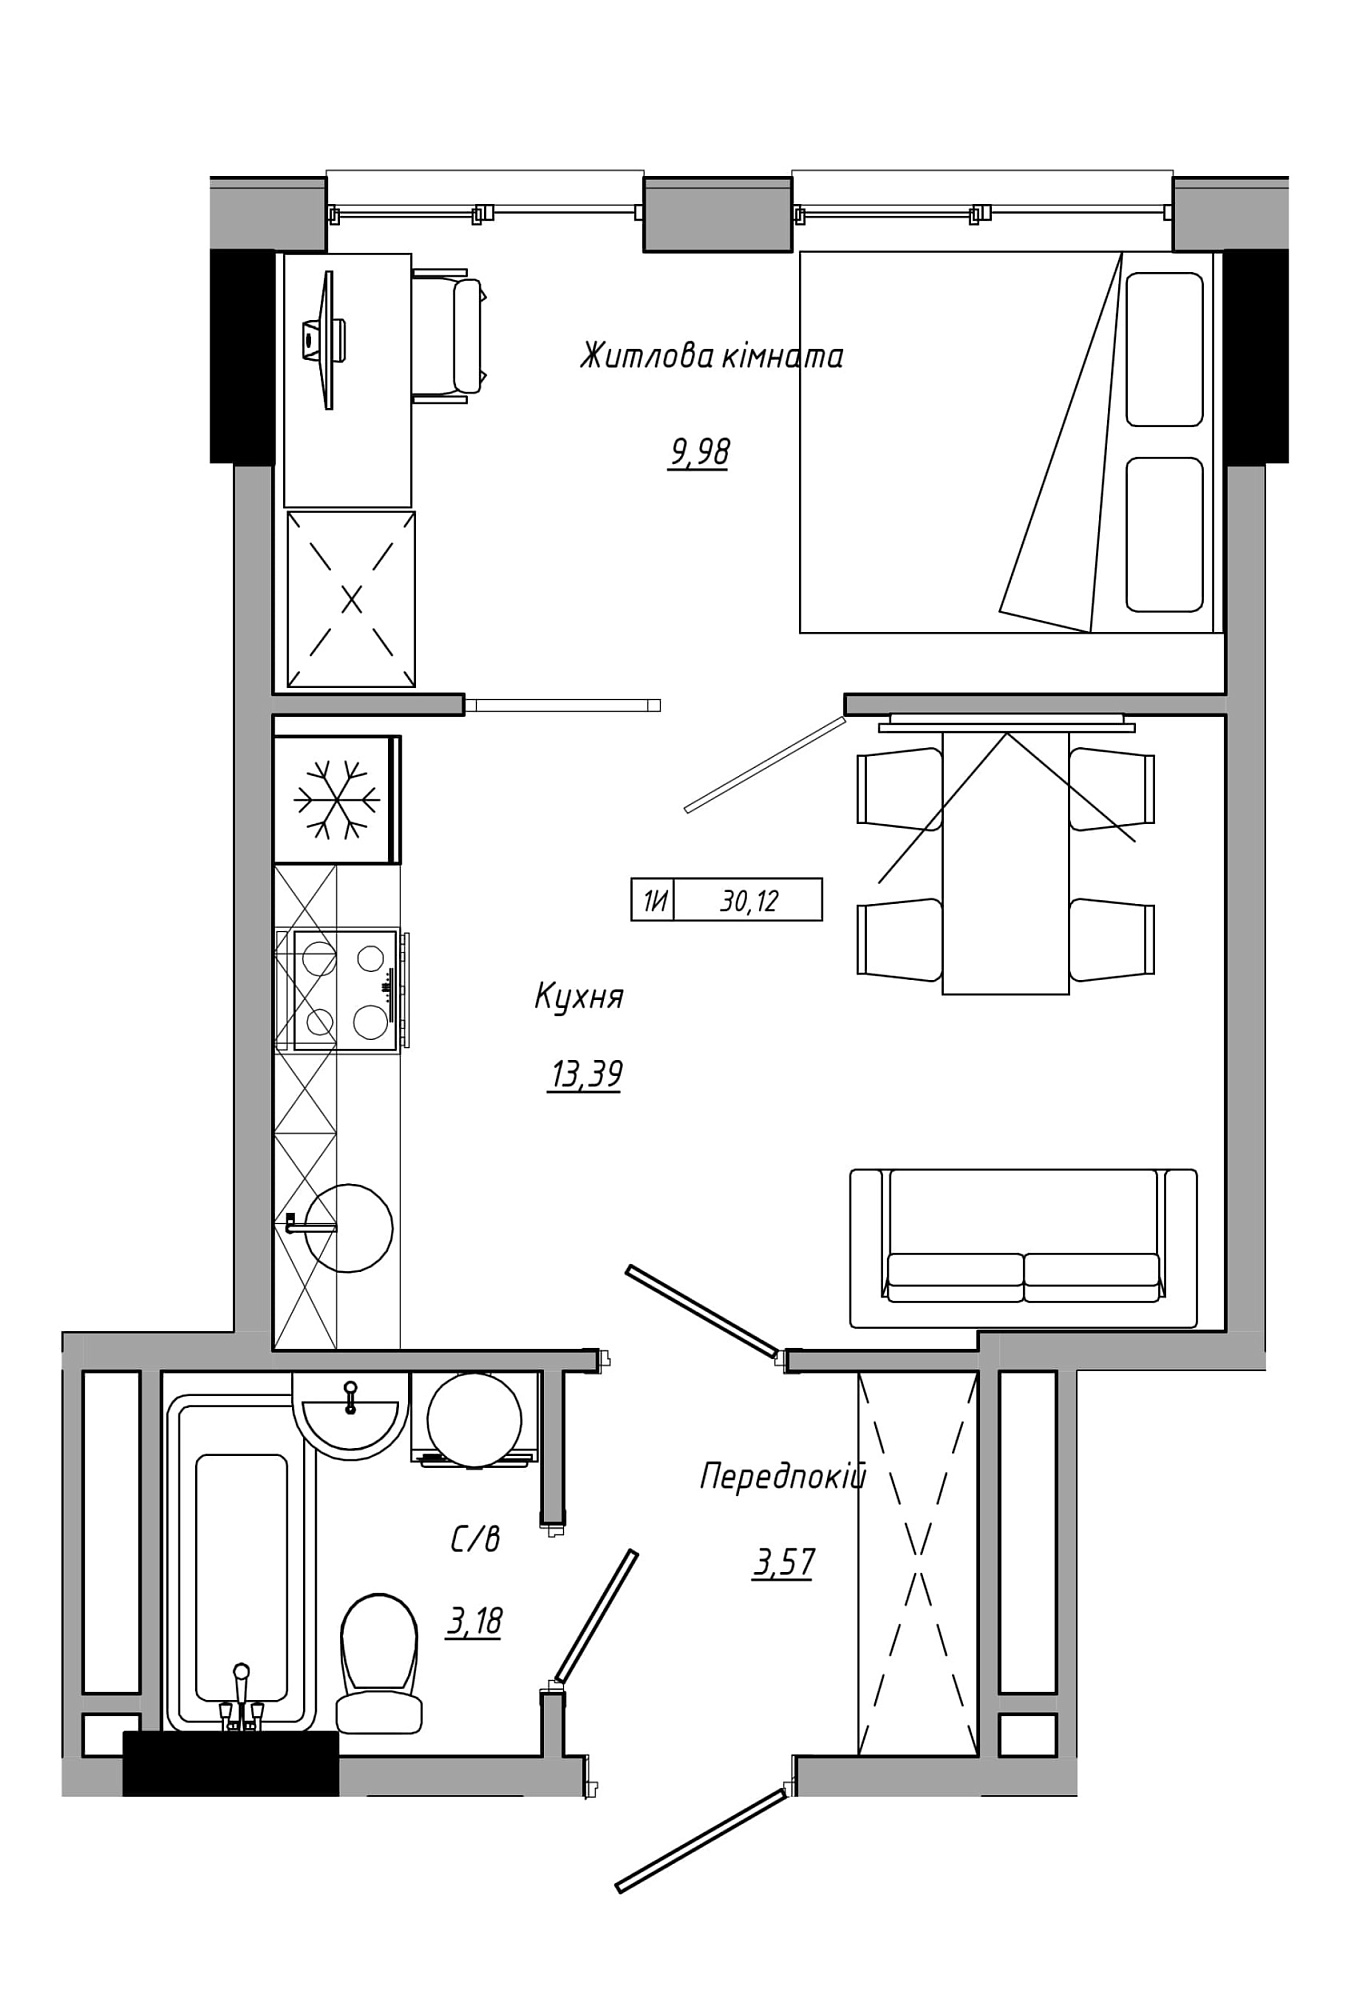 Планировка 1-к квартира площей 30.12м2, AB-21-10/00012.